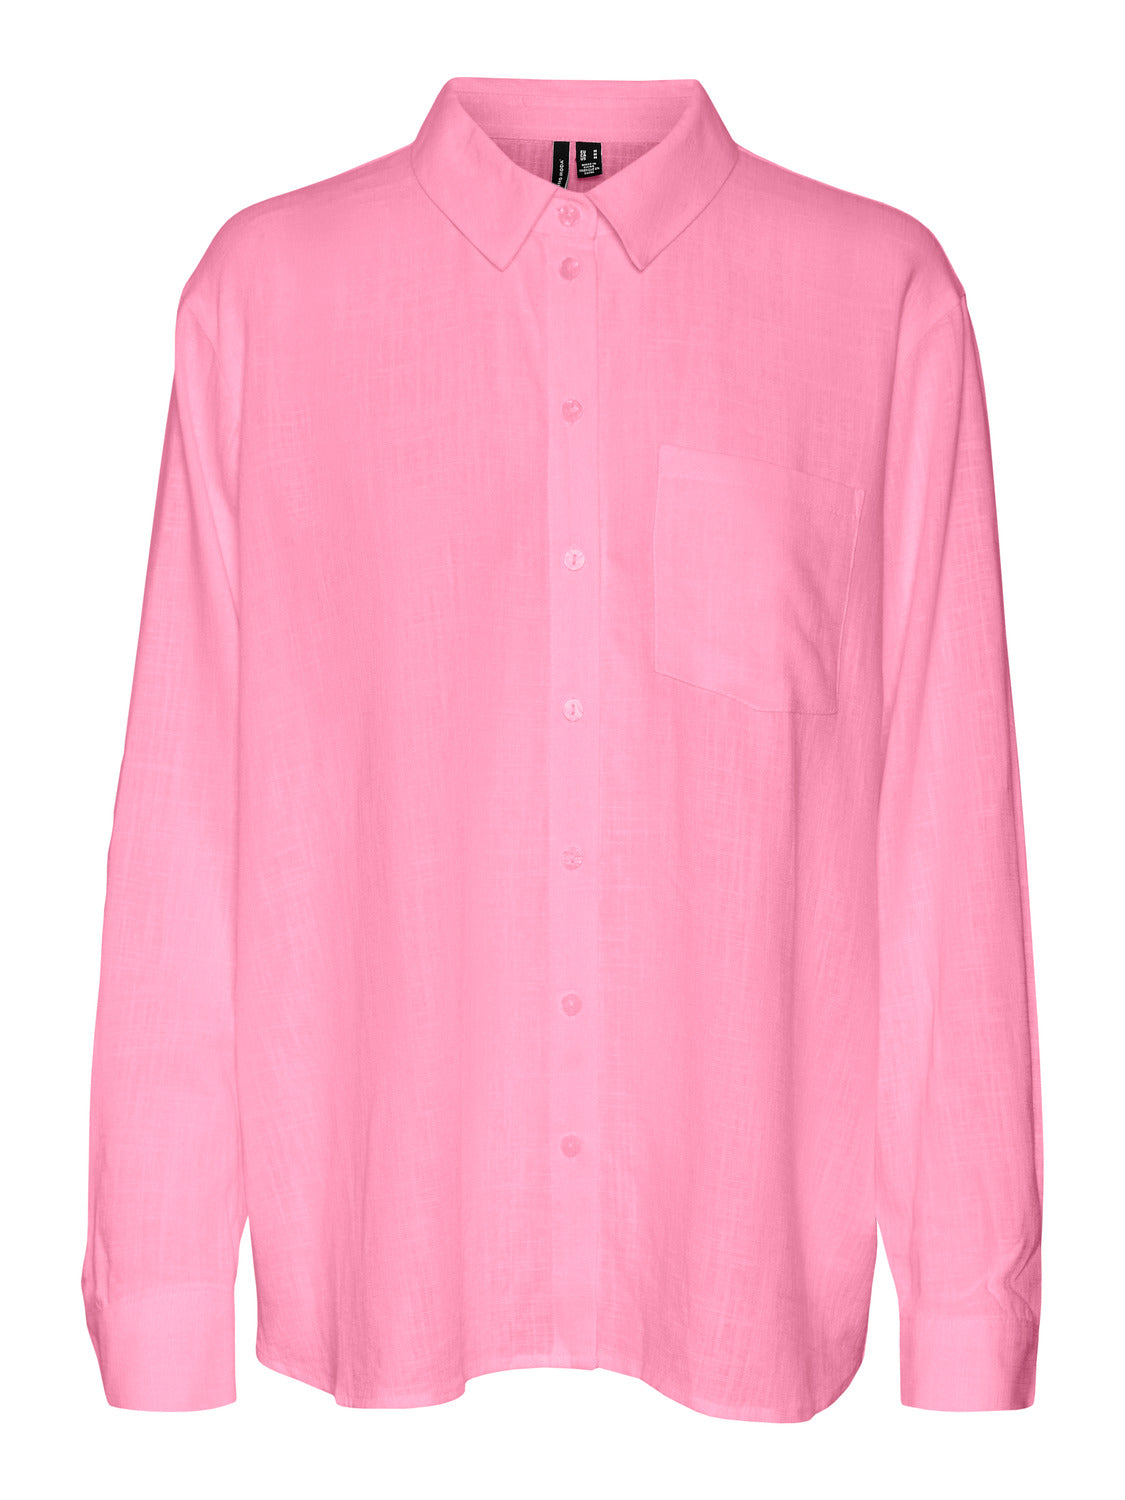 VMELIZABETH Shirts - Prism Pink